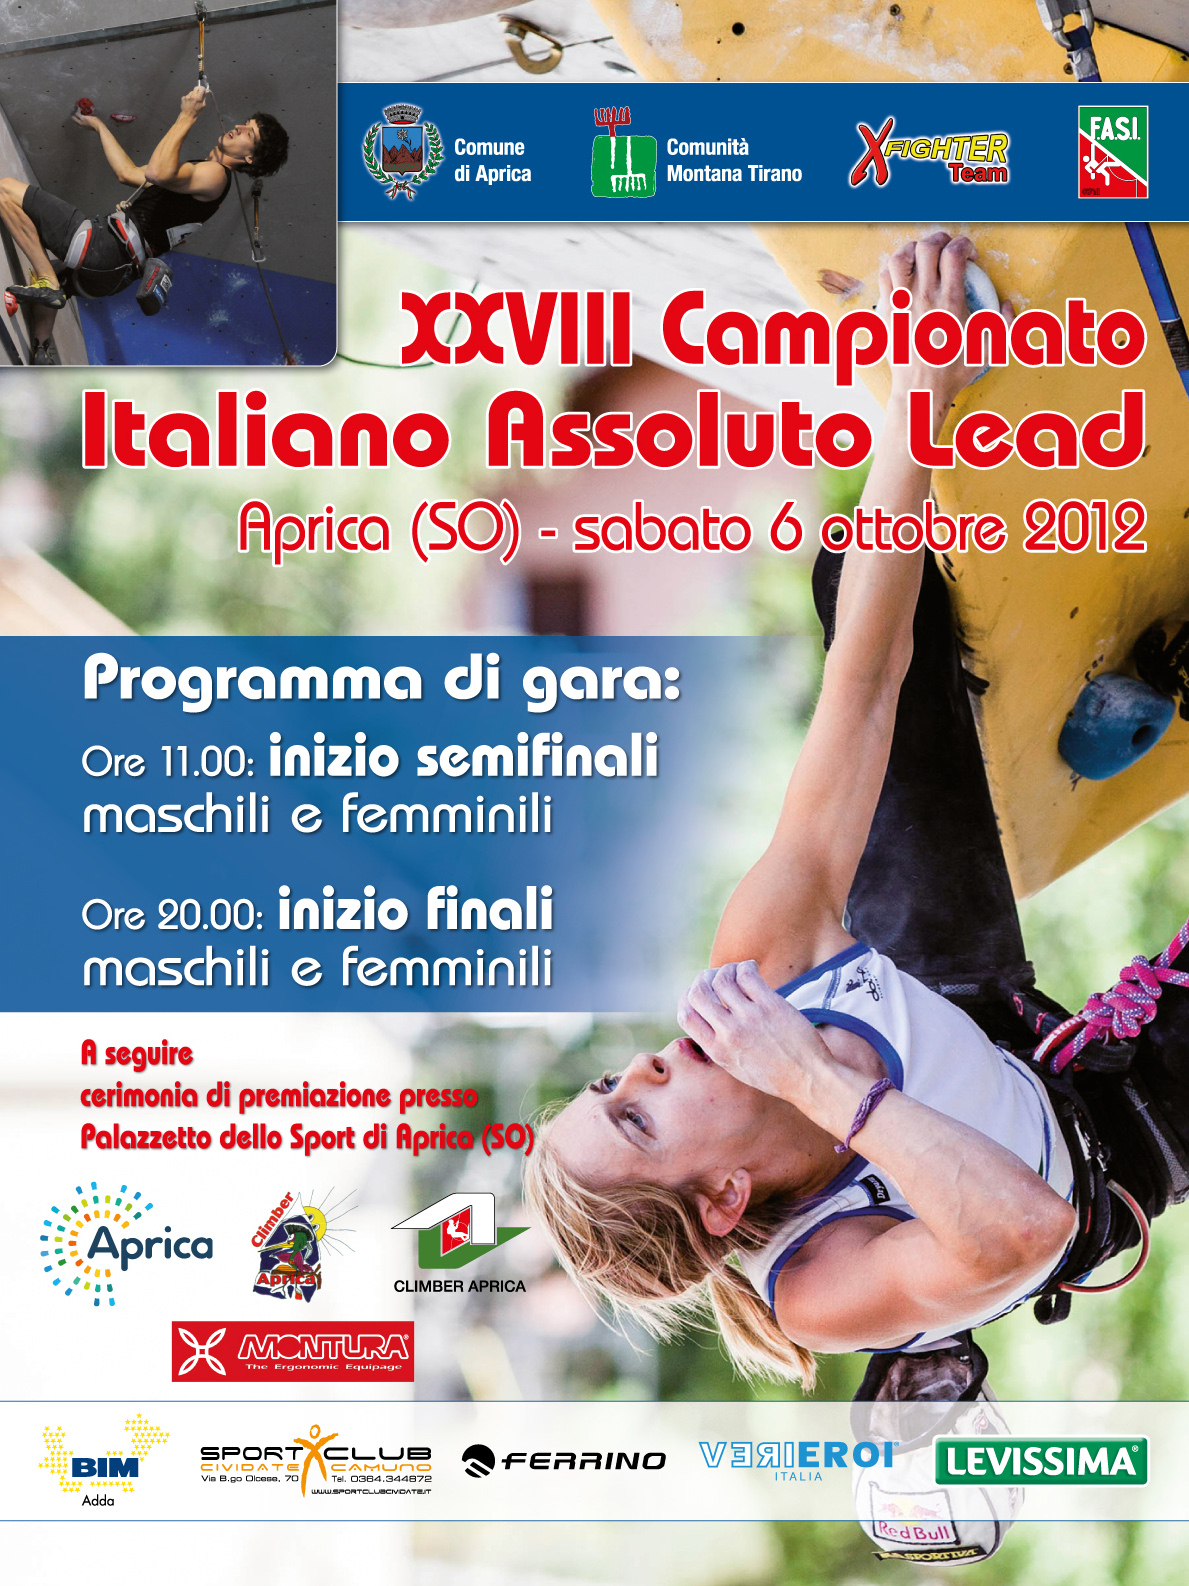 Climbing nazionale ad Aprica con il campionato assoluto Lead